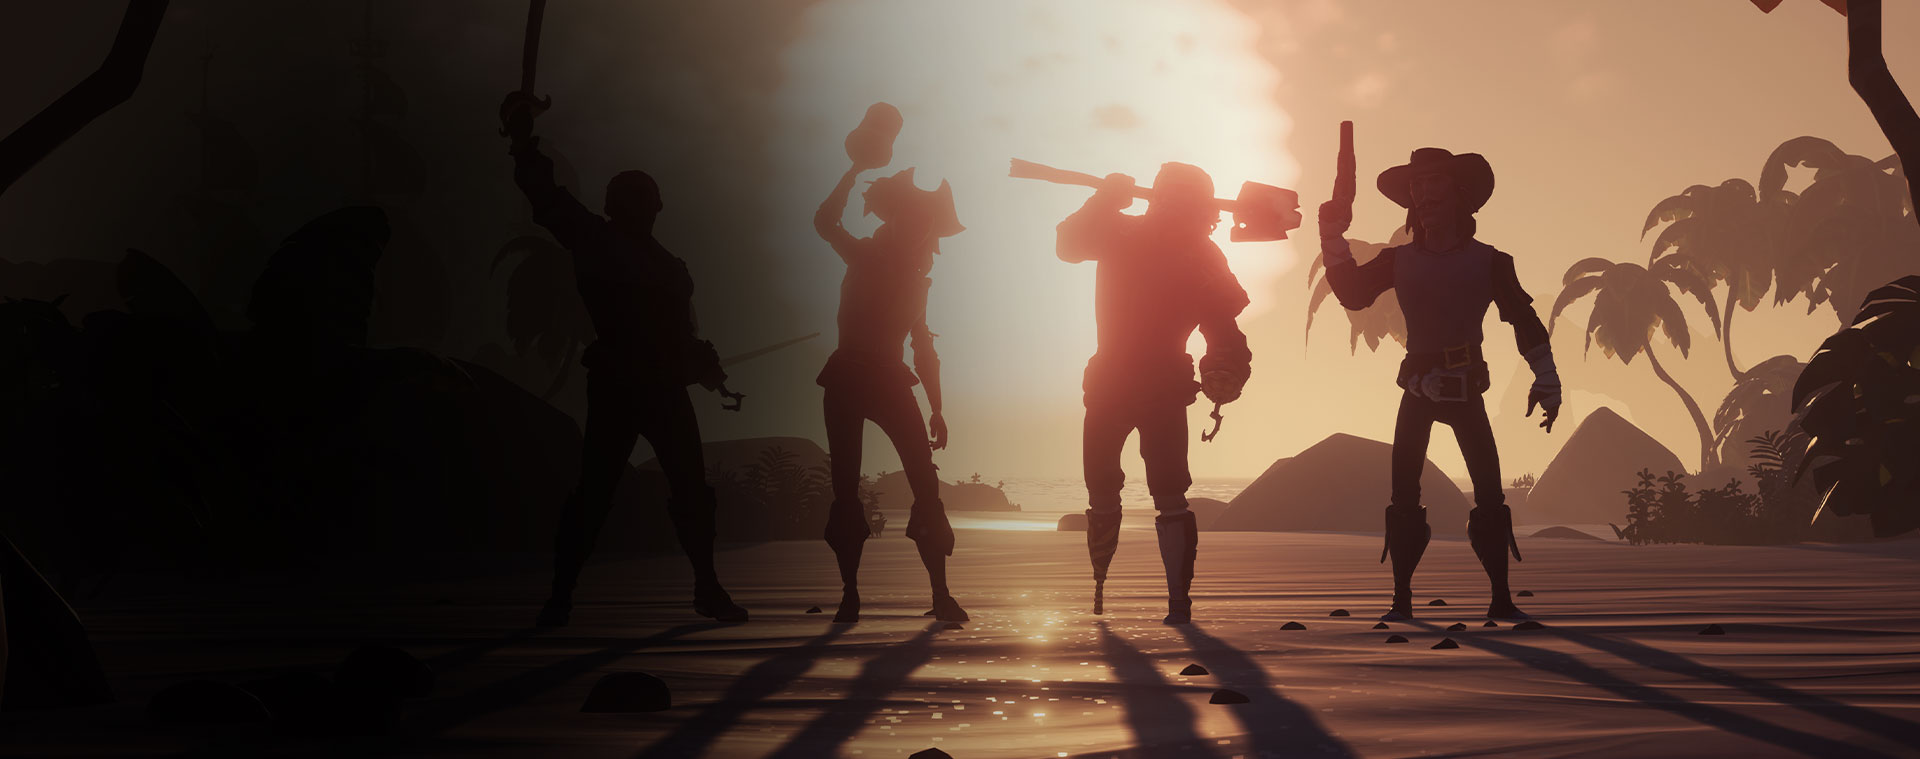 Fyra karaktärer från Sea of Thieves som poserar framför en solnedgång